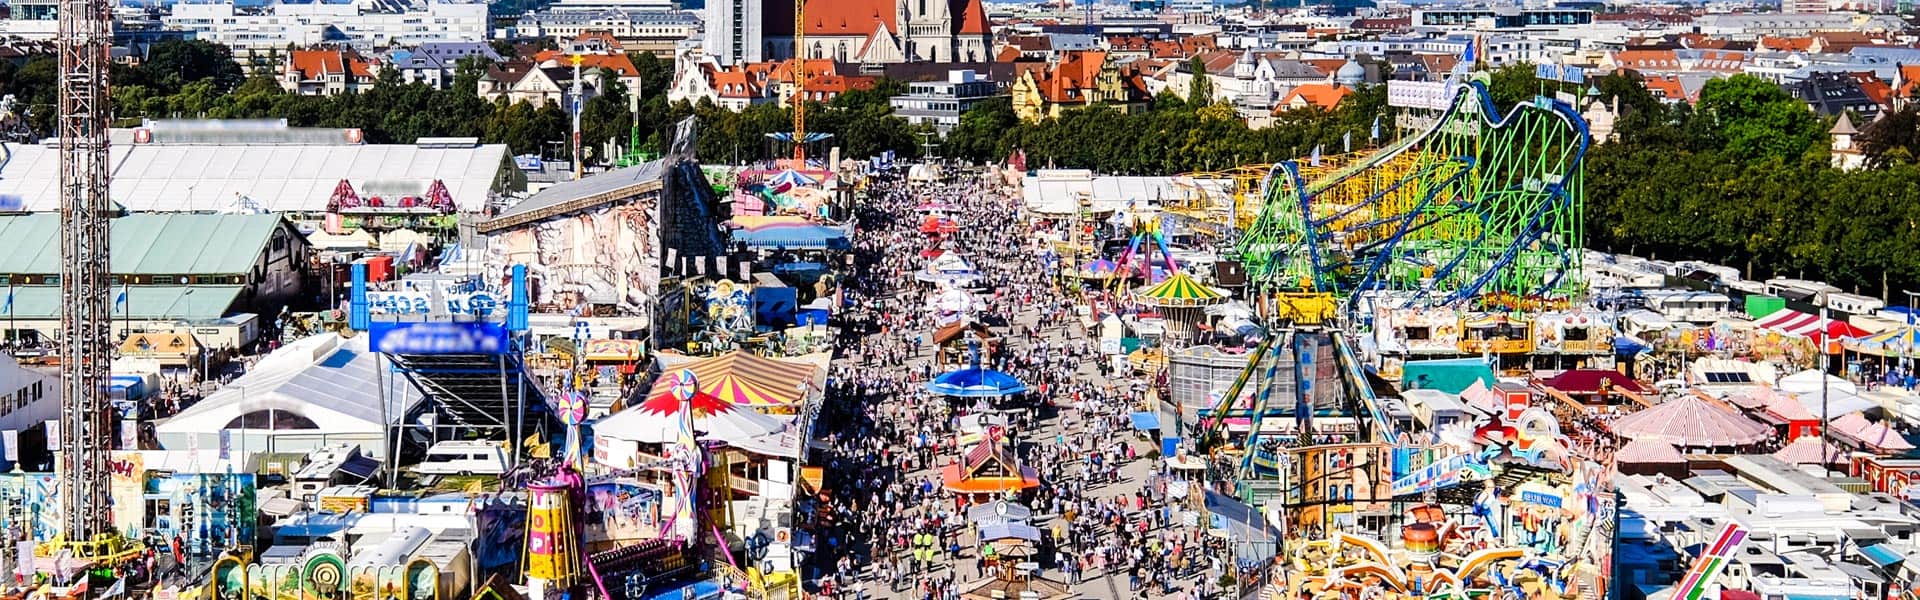 Bummeln, schlendern, feiern: das Oktoberfest München ist immer ein Hit!